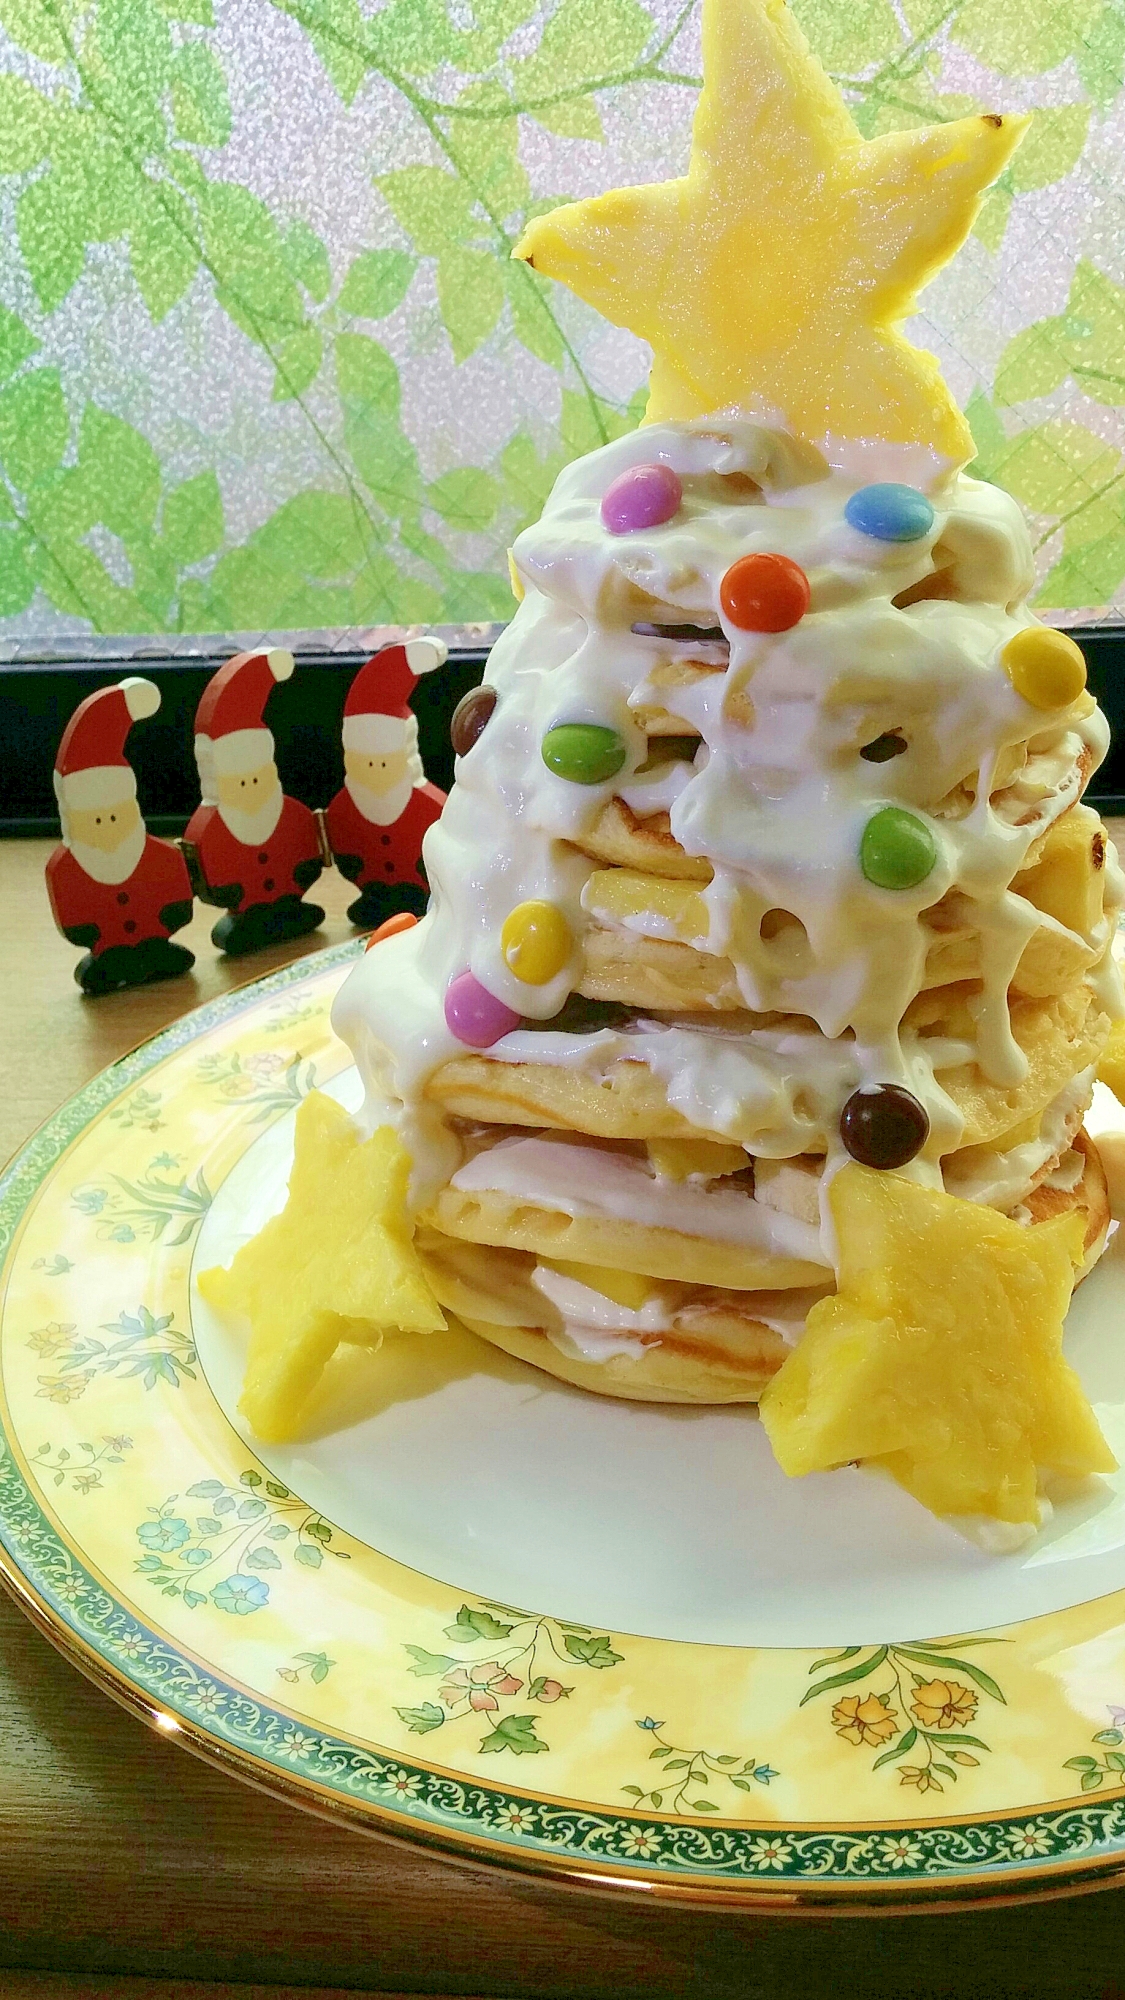 パンケーキでハワイアンなクリスマスツリーケーキ クリスマスケーキ 子供と一緒に手作り出来る 簡単レシピのまとめ 市販スポンジを使ってなど Naver まとめ